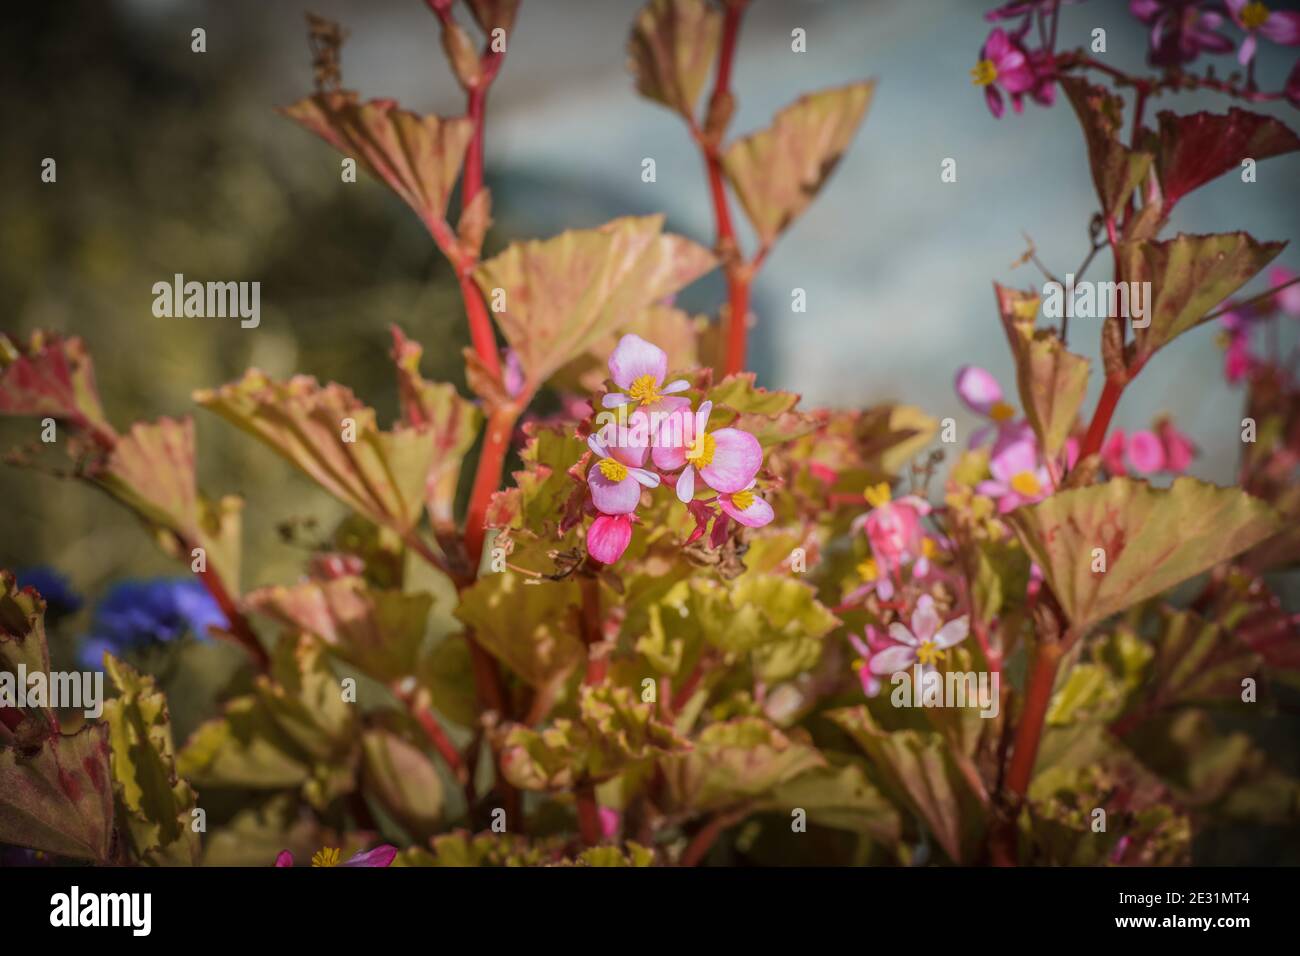 Begonias, semperflorens begonias, in giardino, begonia in vaso. Modello di bello naturale giallo e arancio begonia fiori texture piena fioritura i Foto Stock